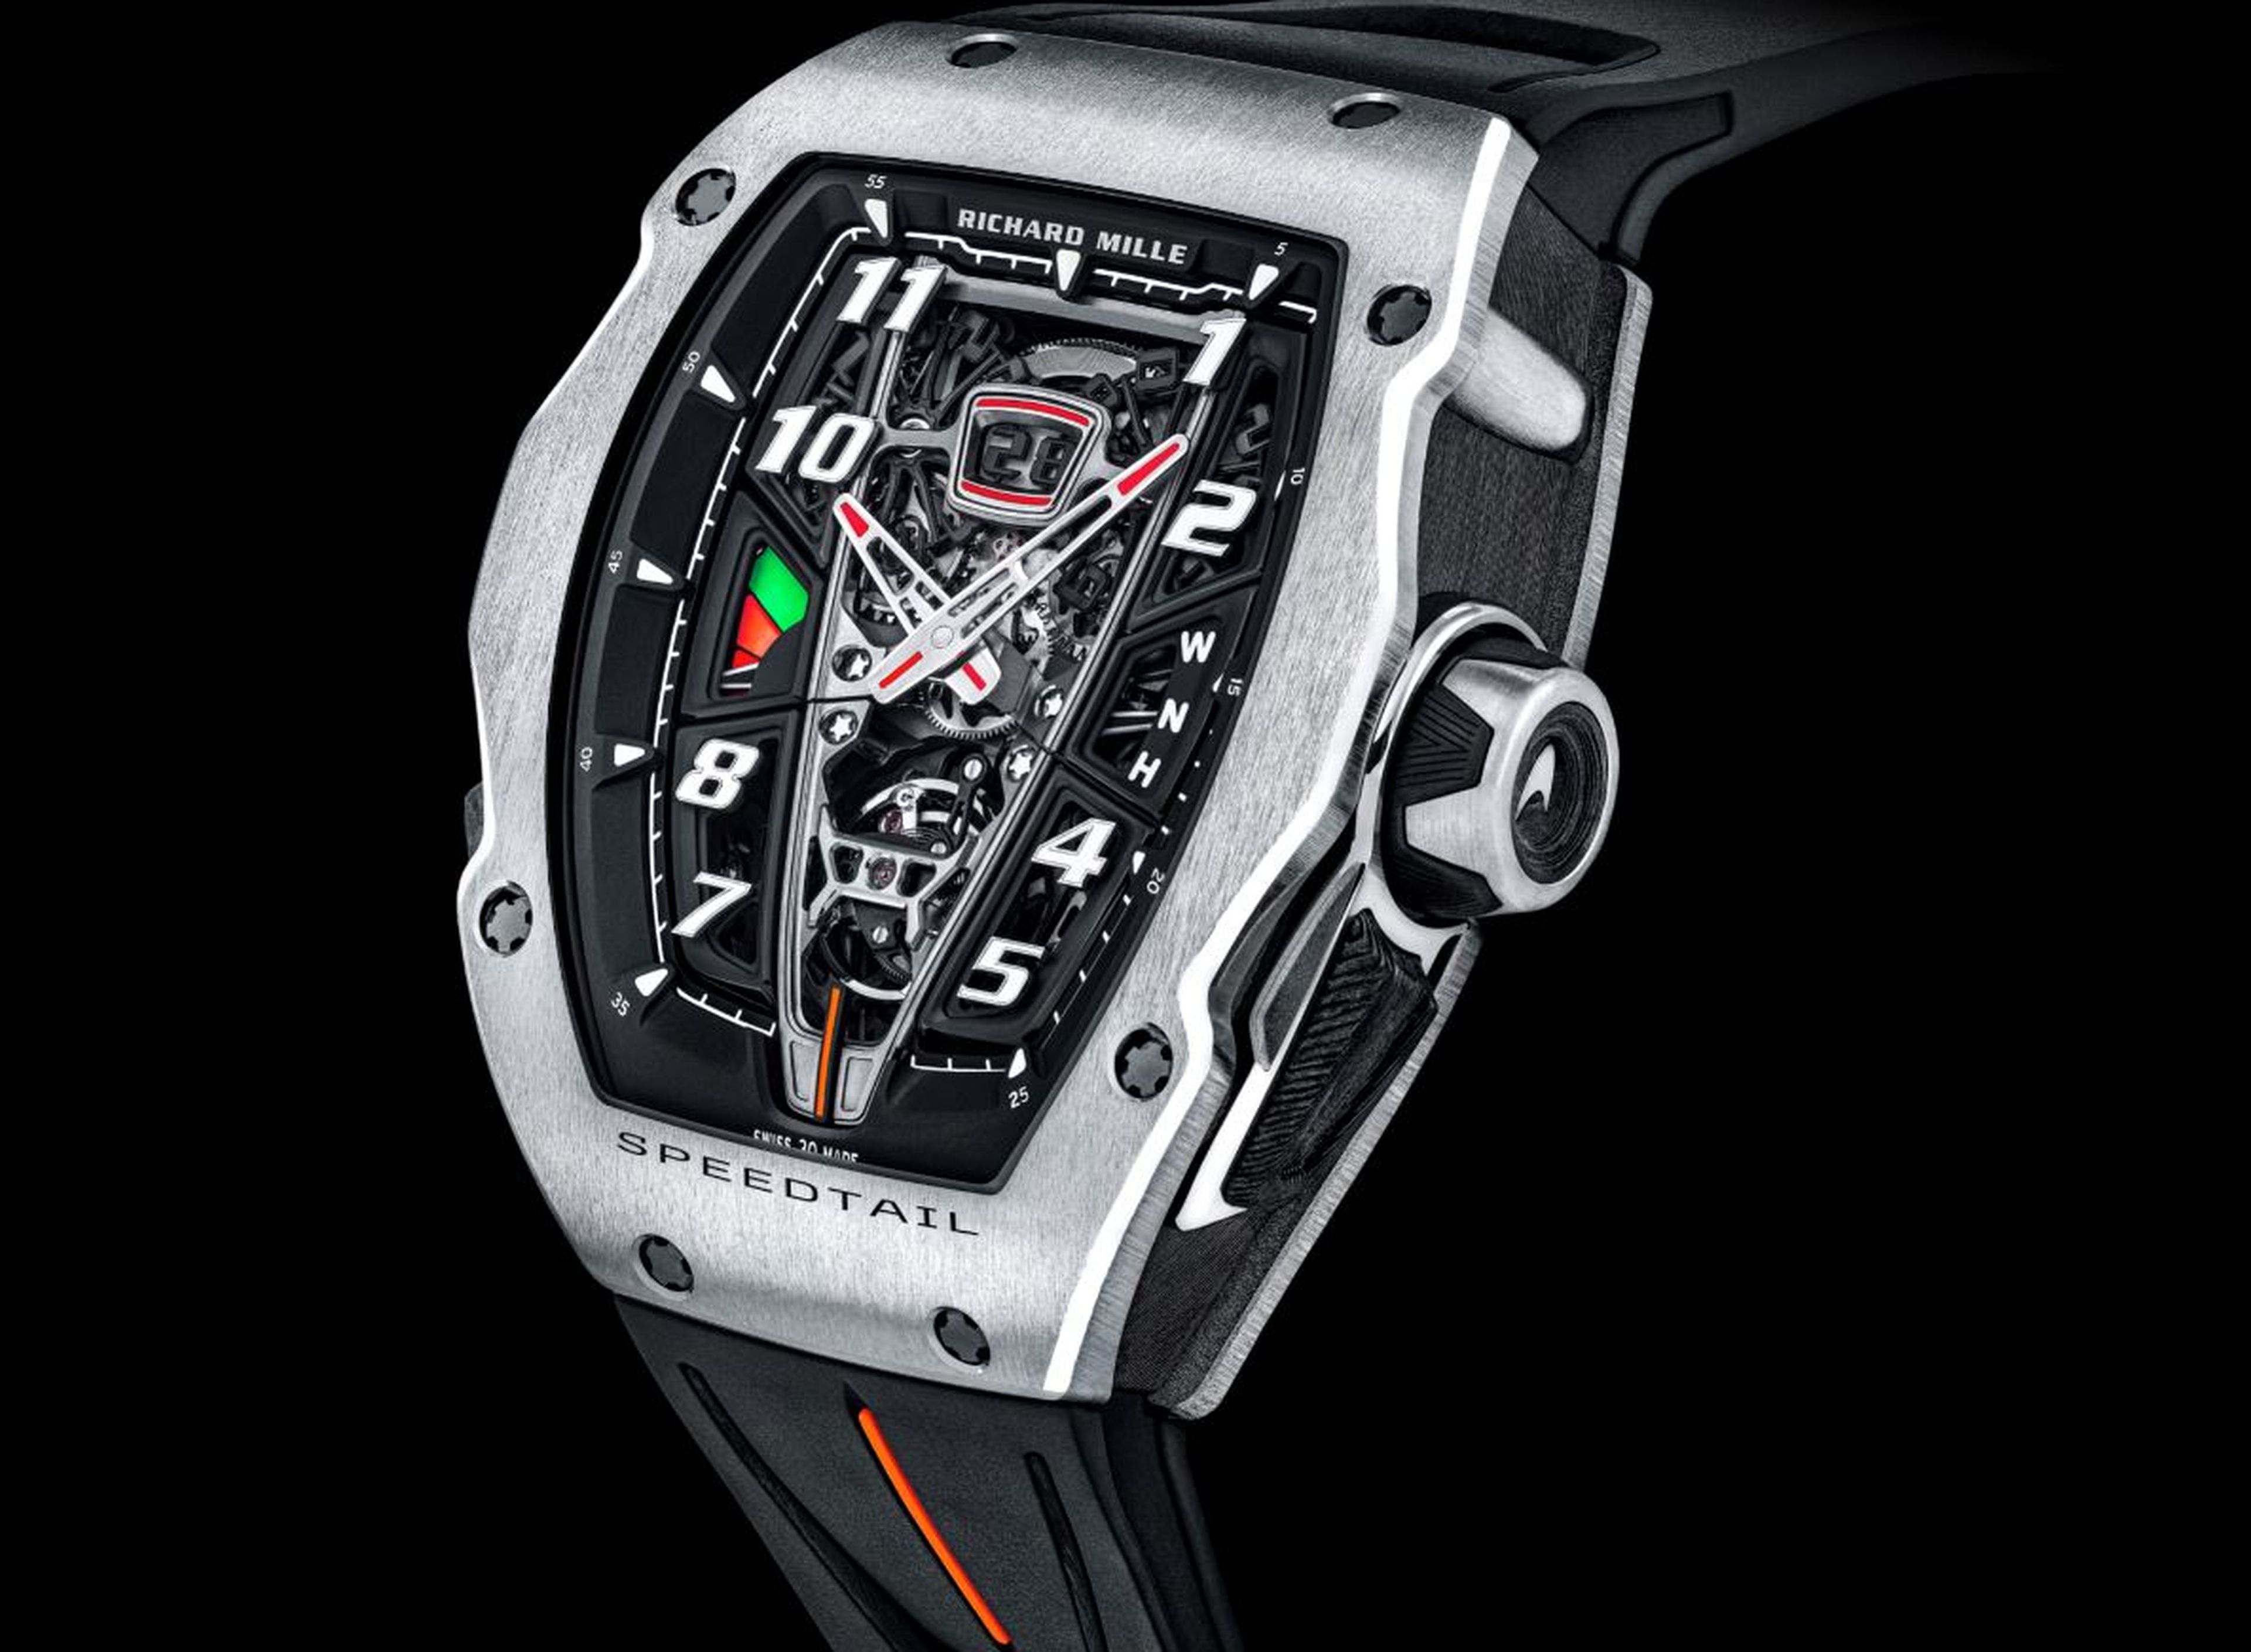 Reloj Speedtail RM 40-01 de McLaren Y Richard Mille